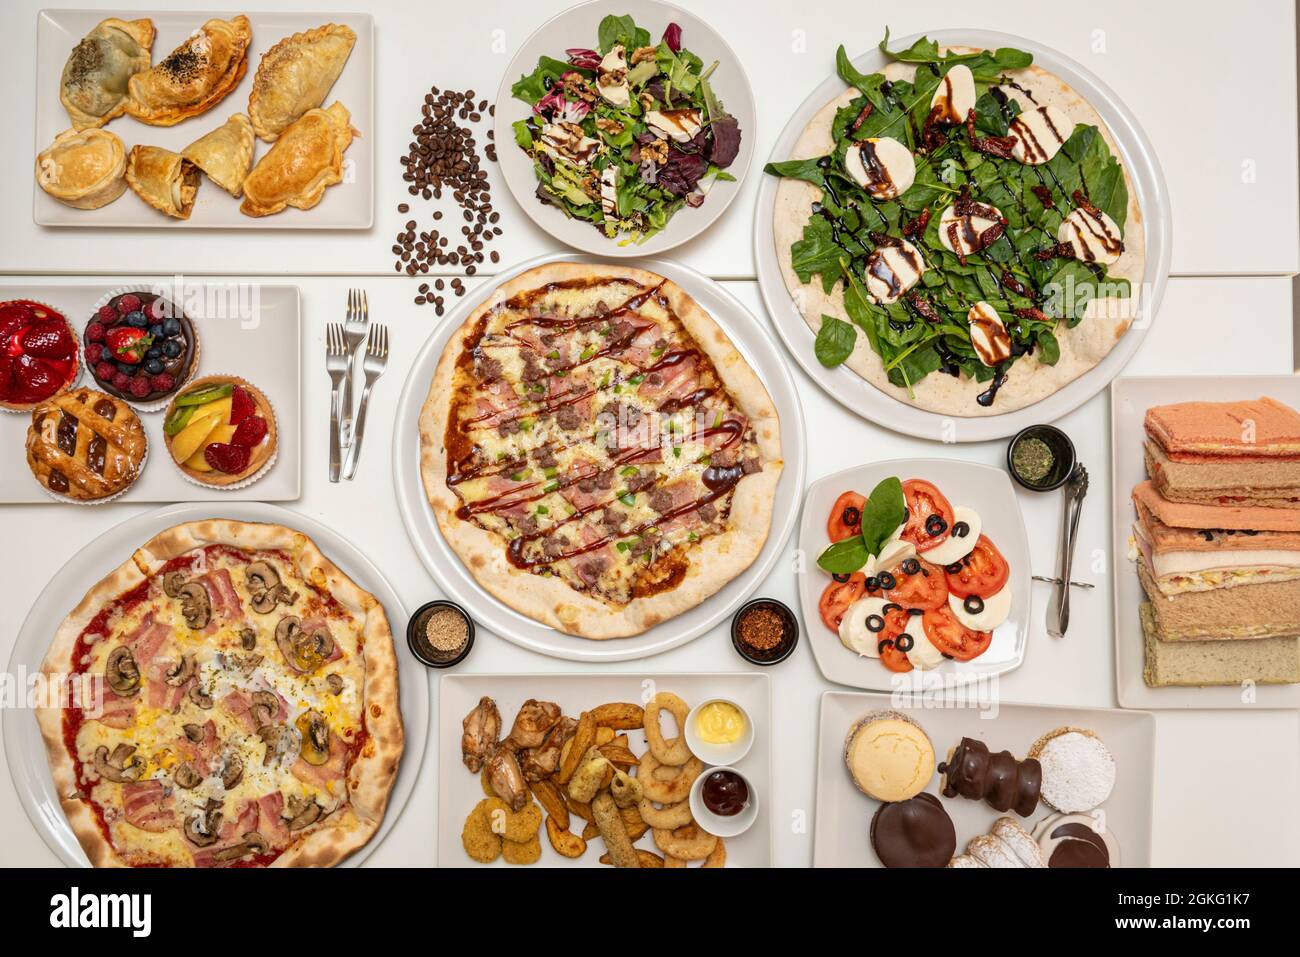 Zusammensetzung mit Pizzaplatten, Törtchen, Salaten, Sandwiches, Empanadas, Vorspeisen und argentinischer Kuchen Stockfoto